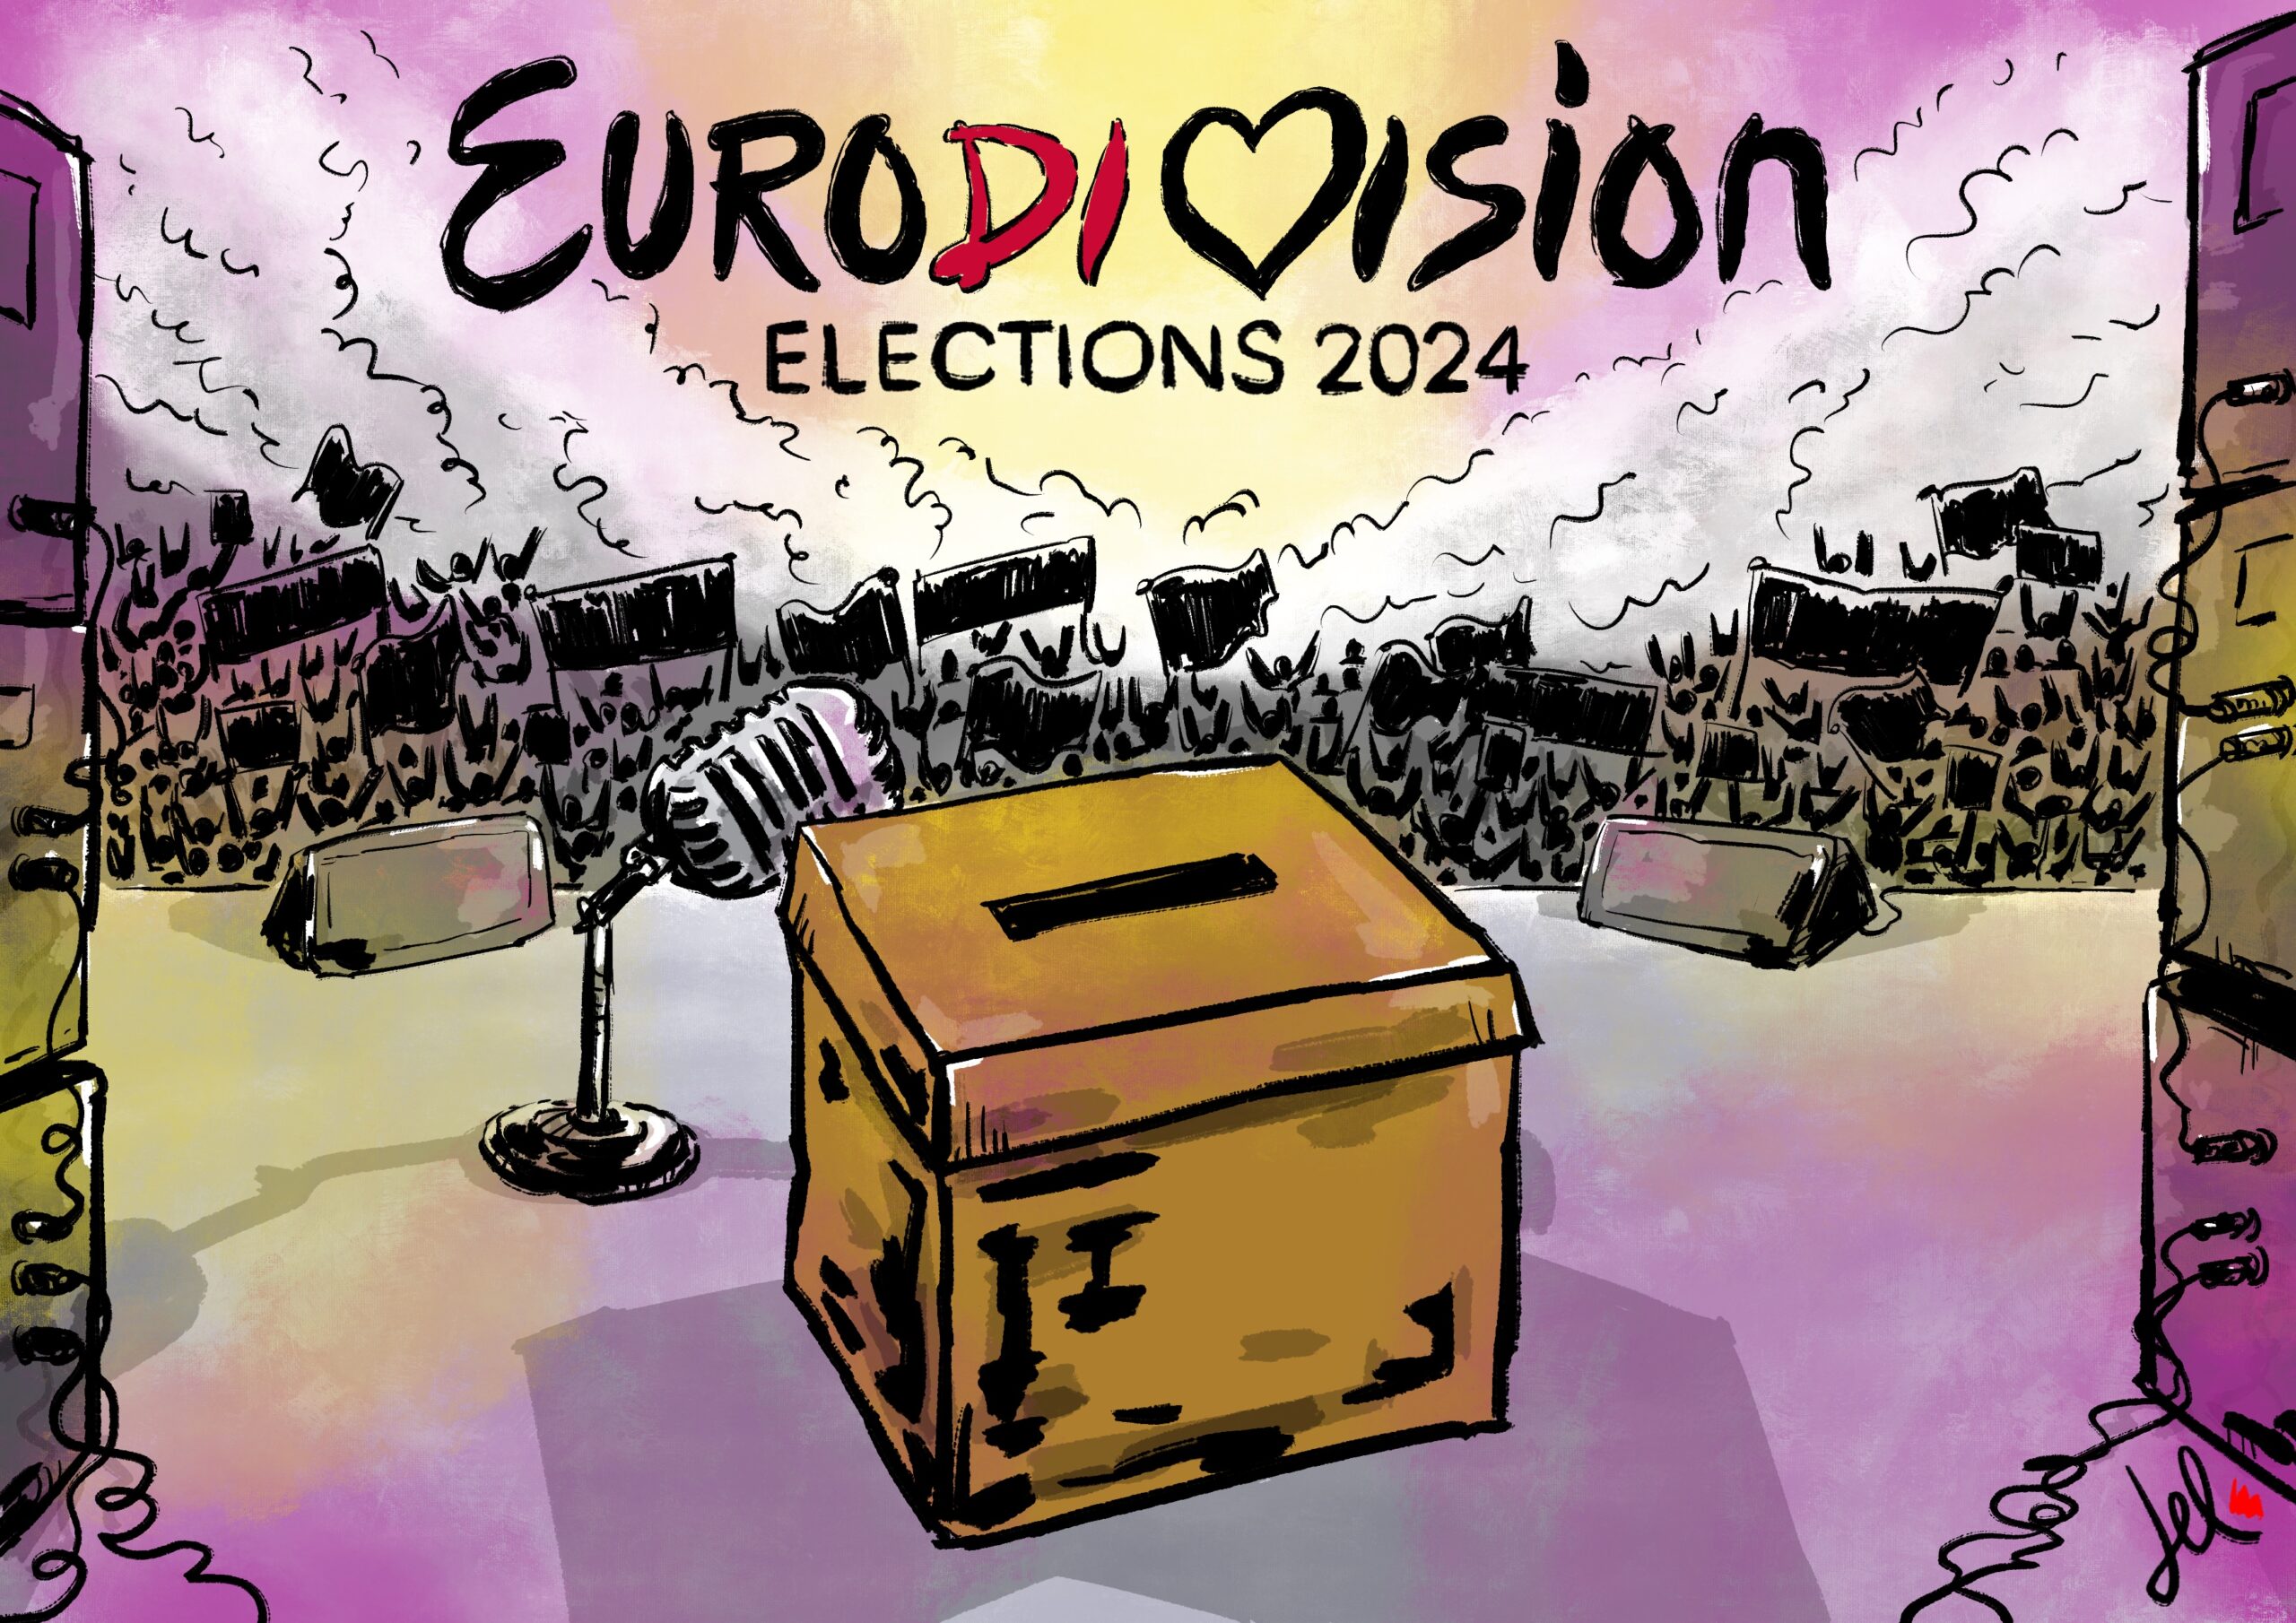 emanuele del rosso euroDIvision